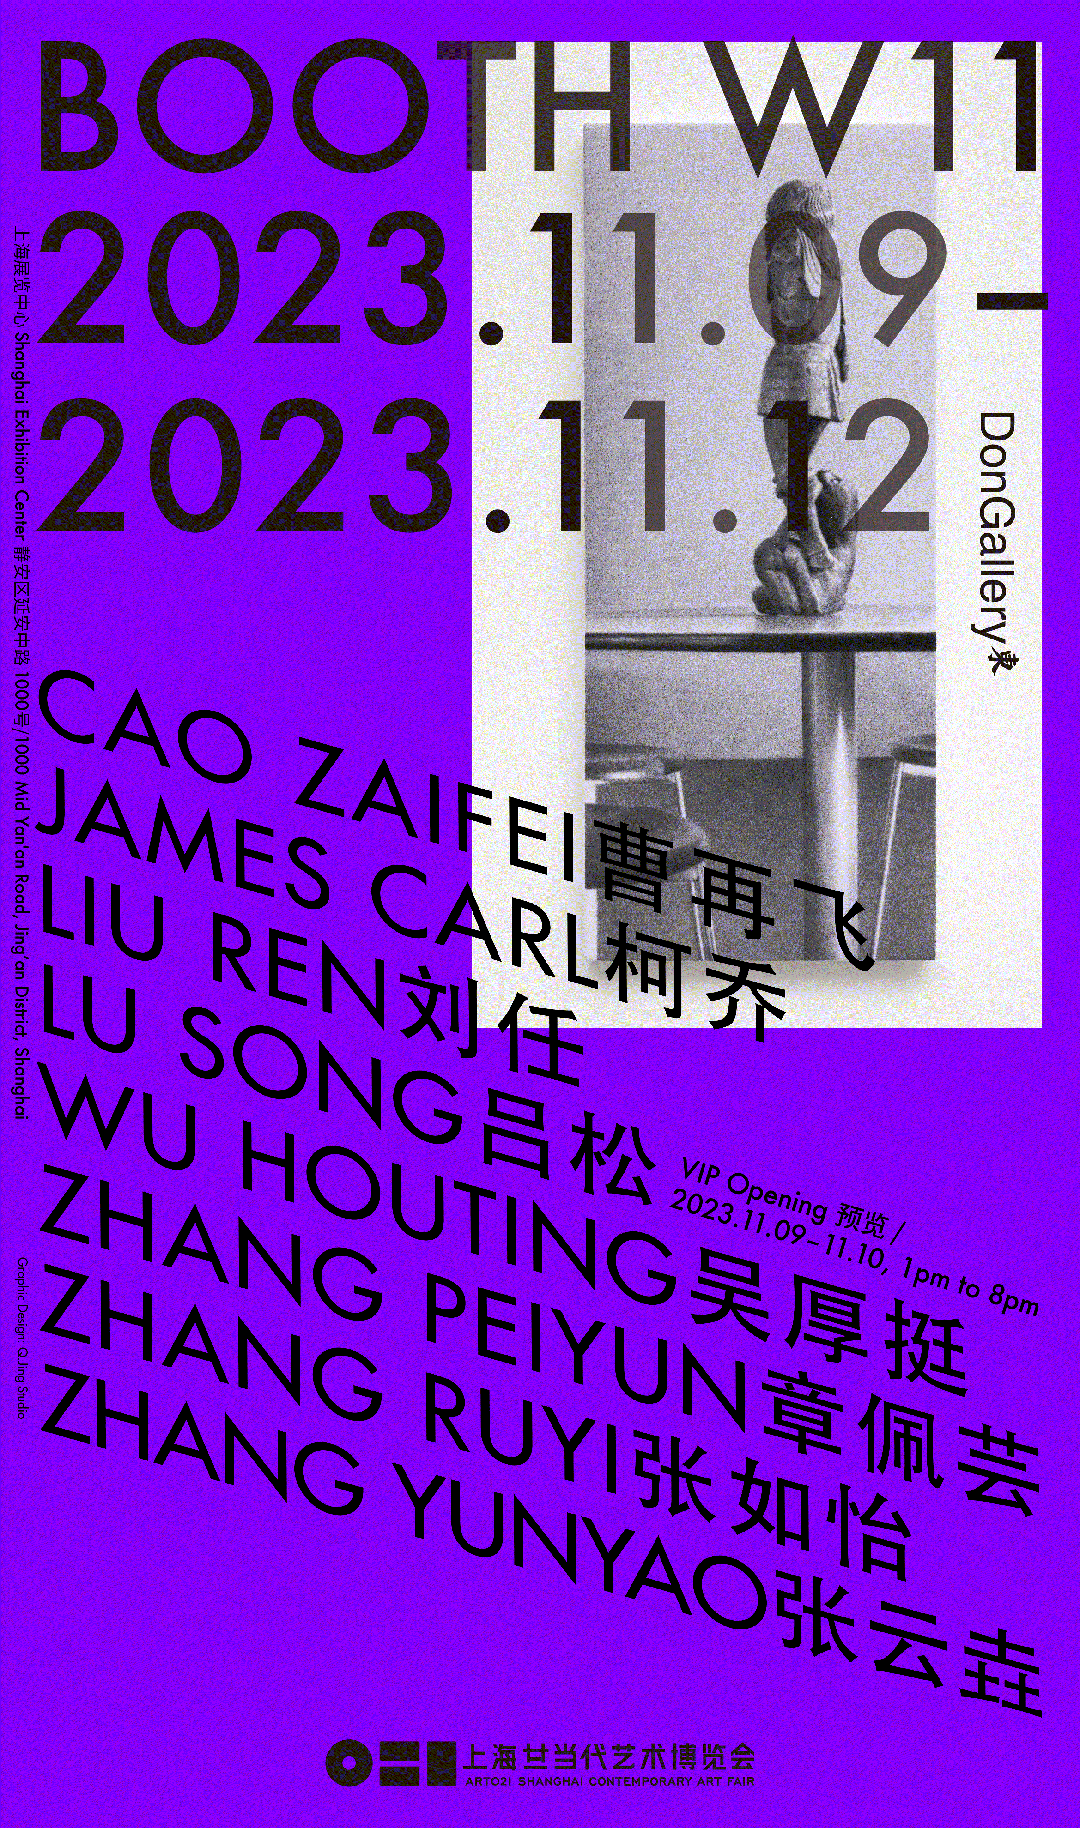 东画廊参展2023年ART021上海廿一当代艺术博览会 | Booth W11 崇真艺客